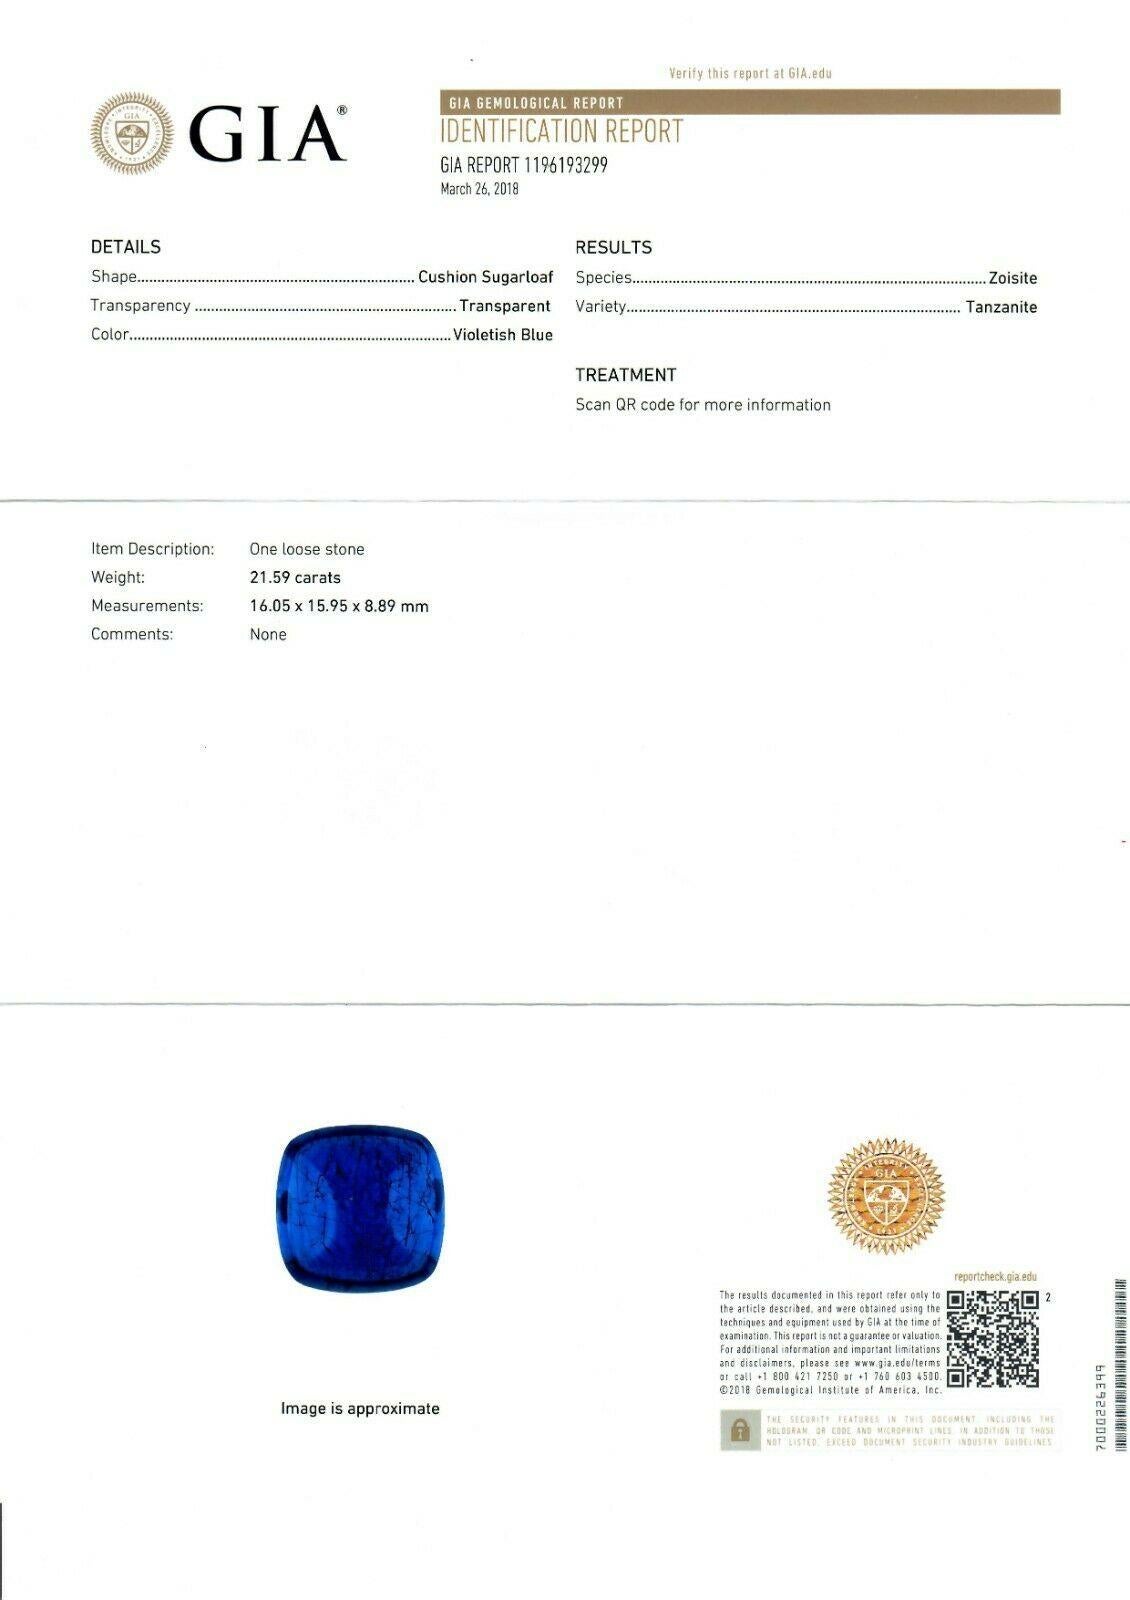 18k Gold & Platinum 21.59ct GIA Cushion Sugarloaf Violetish Blue Tanzanite Ring 6